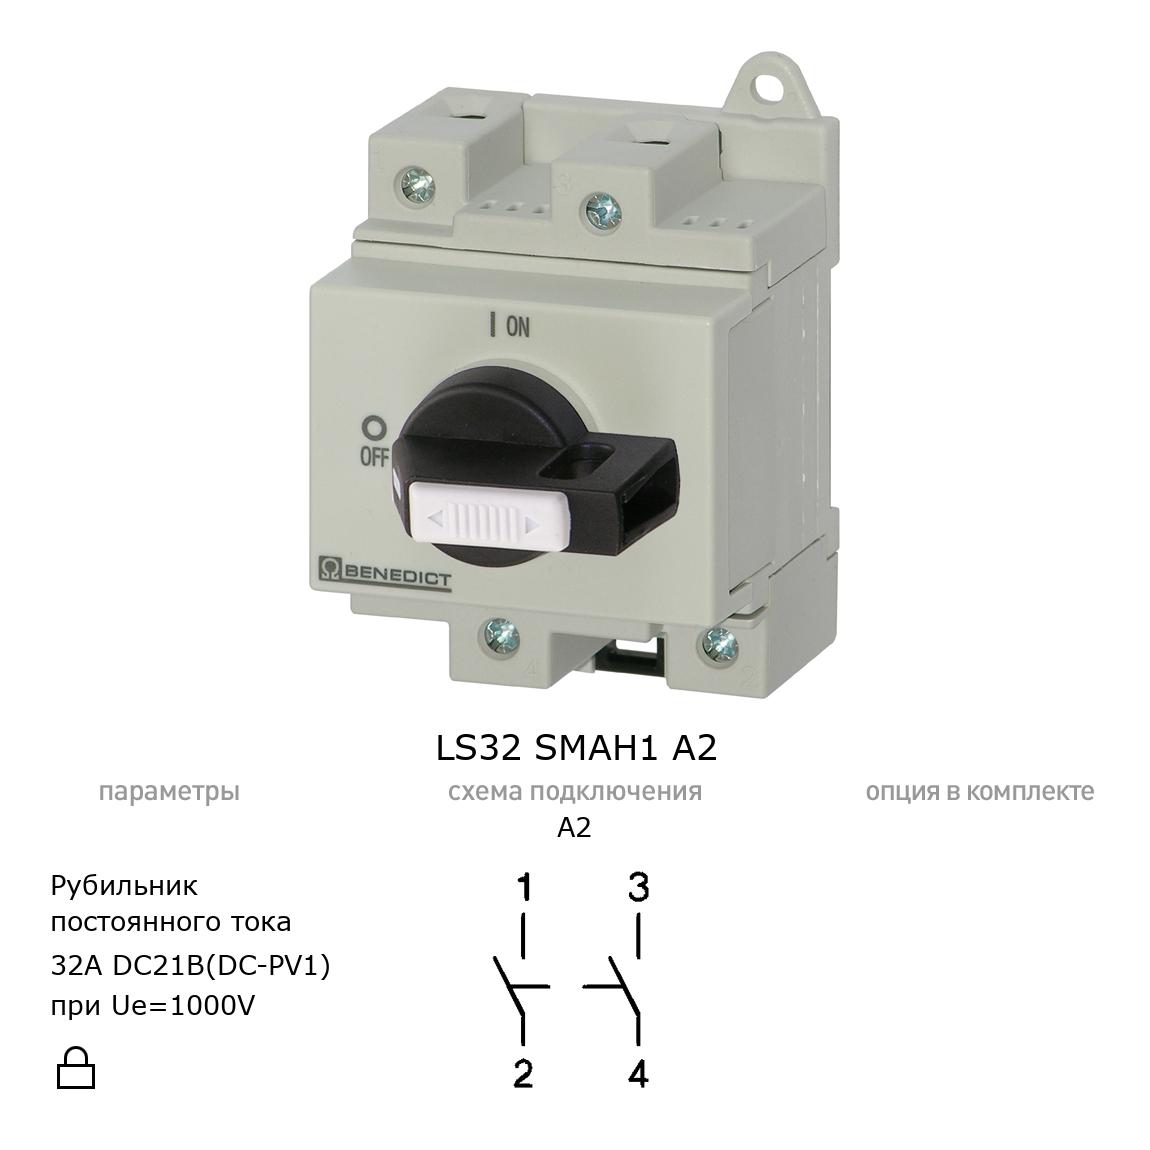 Выключатель нагрузки / рубильник для постоянного тока (DC) LS32 SMAH1 A2 BENEDICT